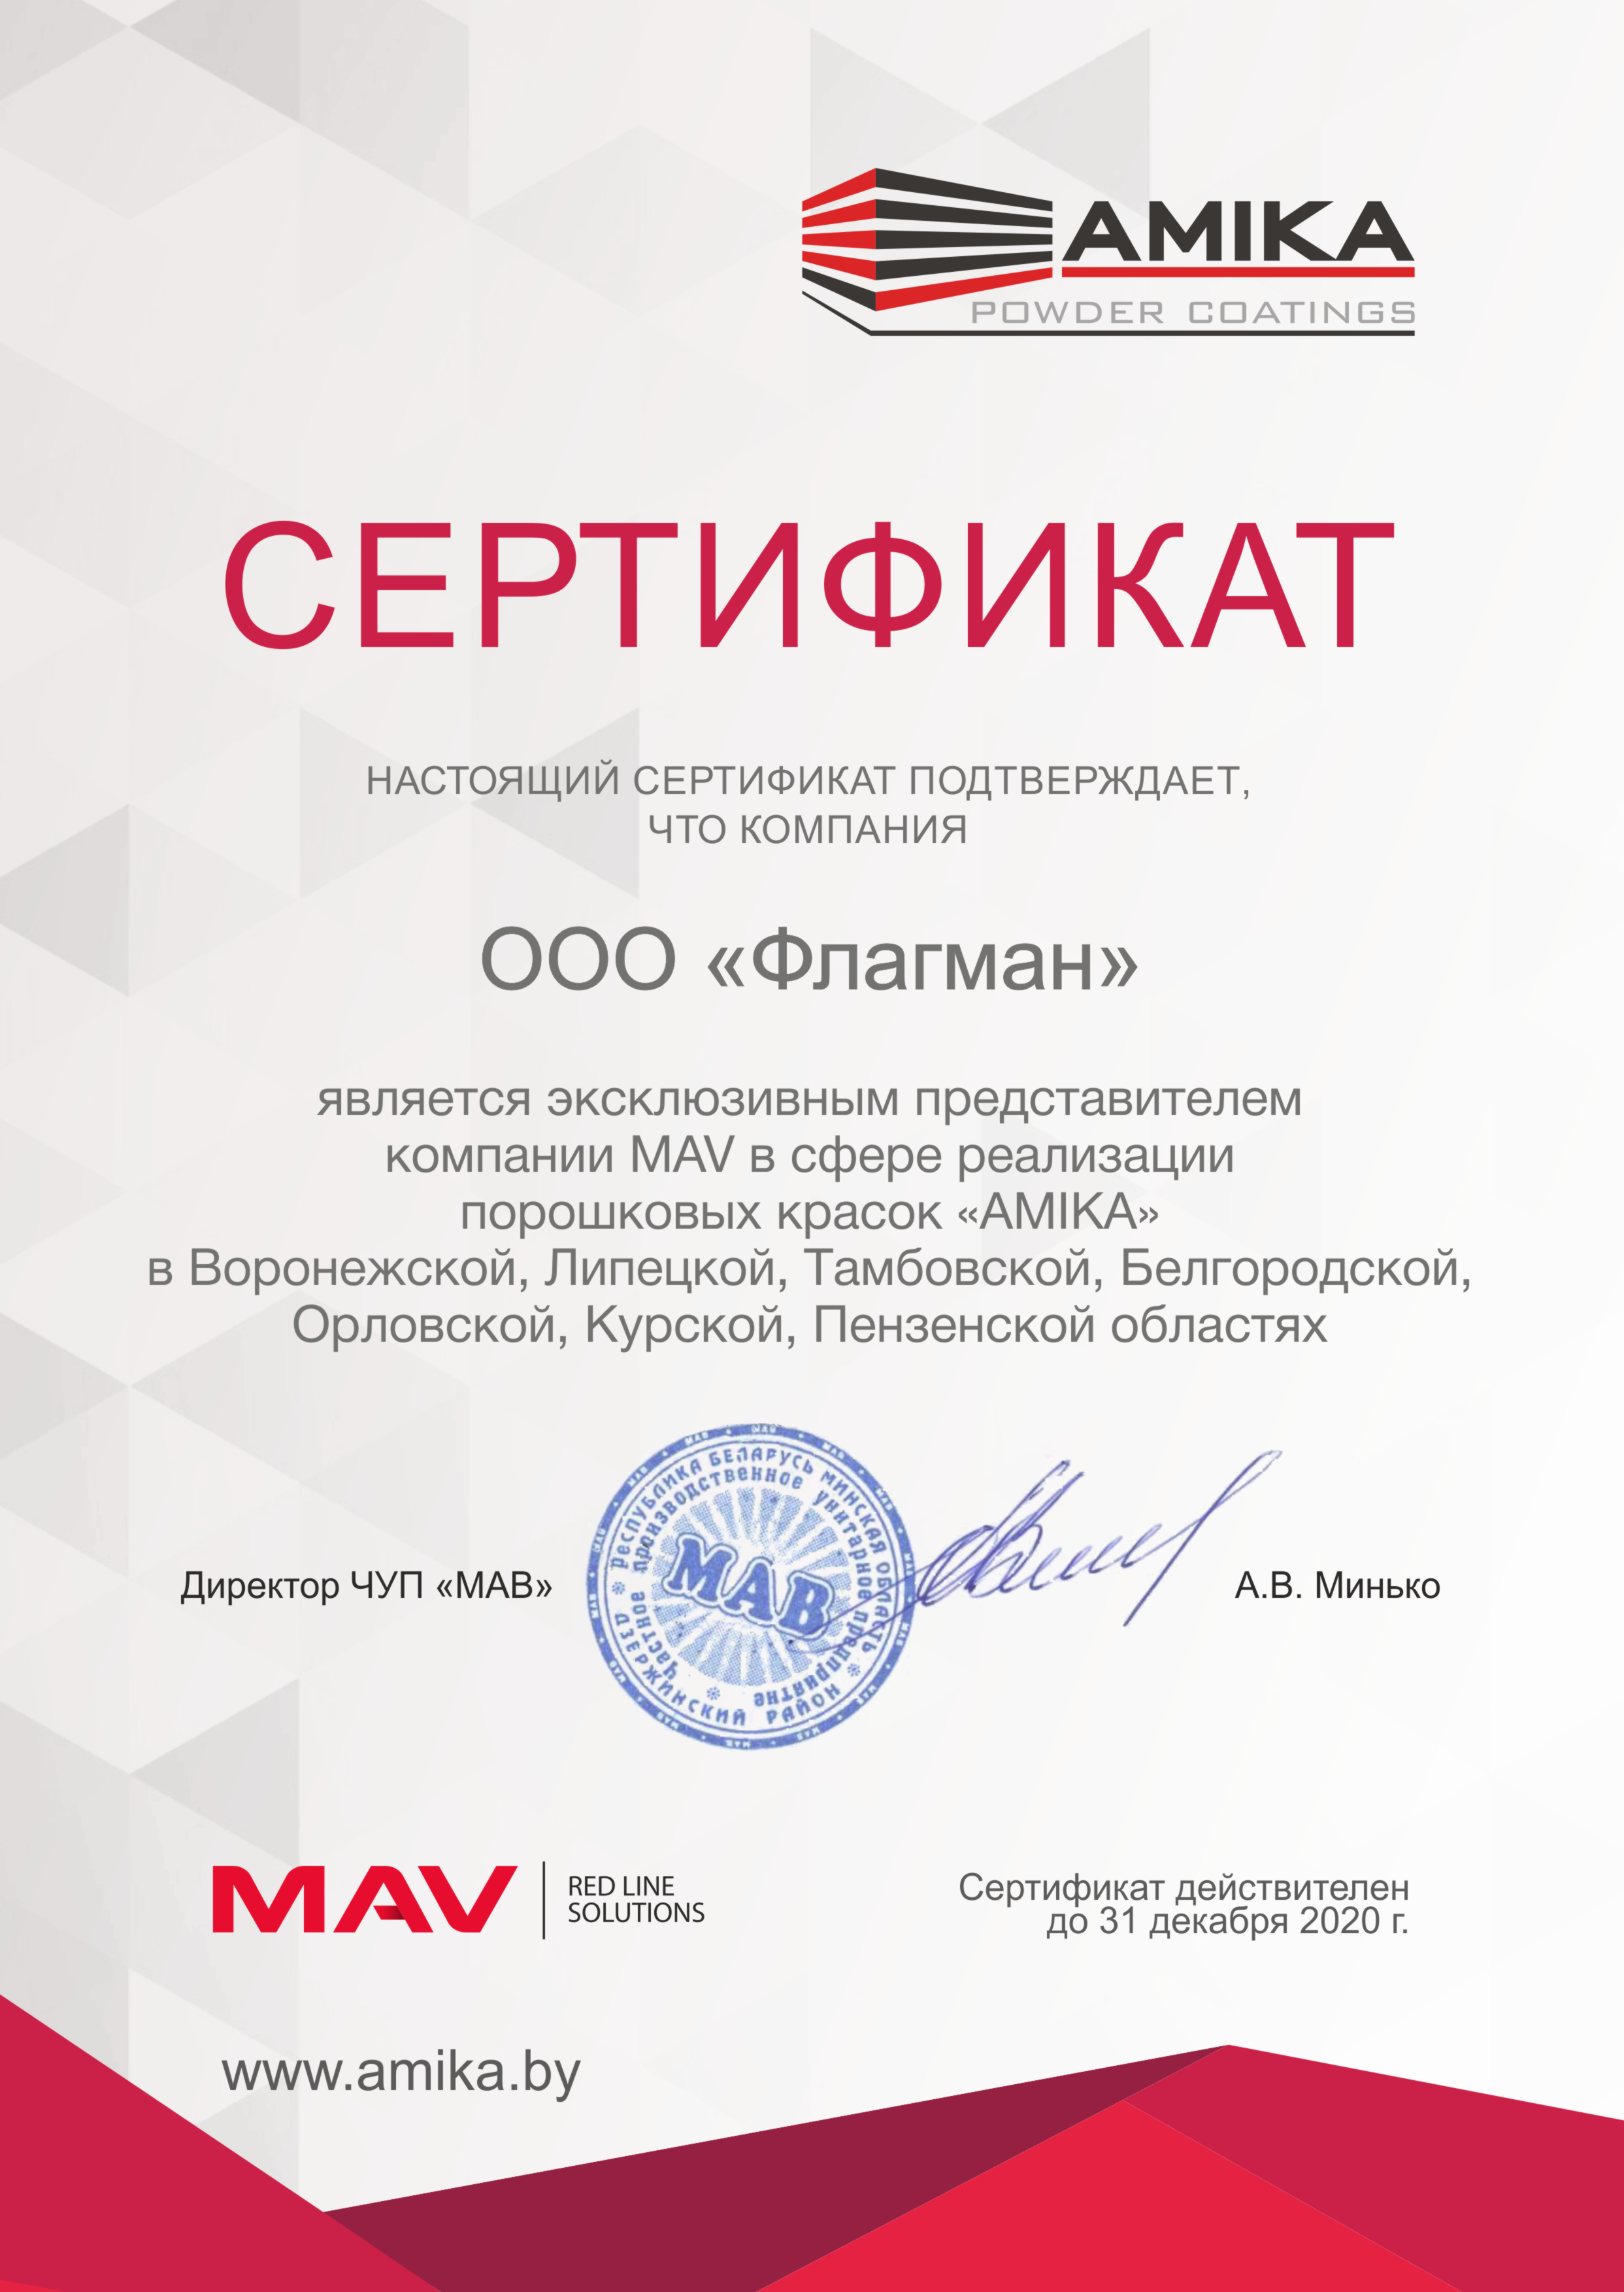 Сертификат дилера 2017 ООО ОМА.jpg